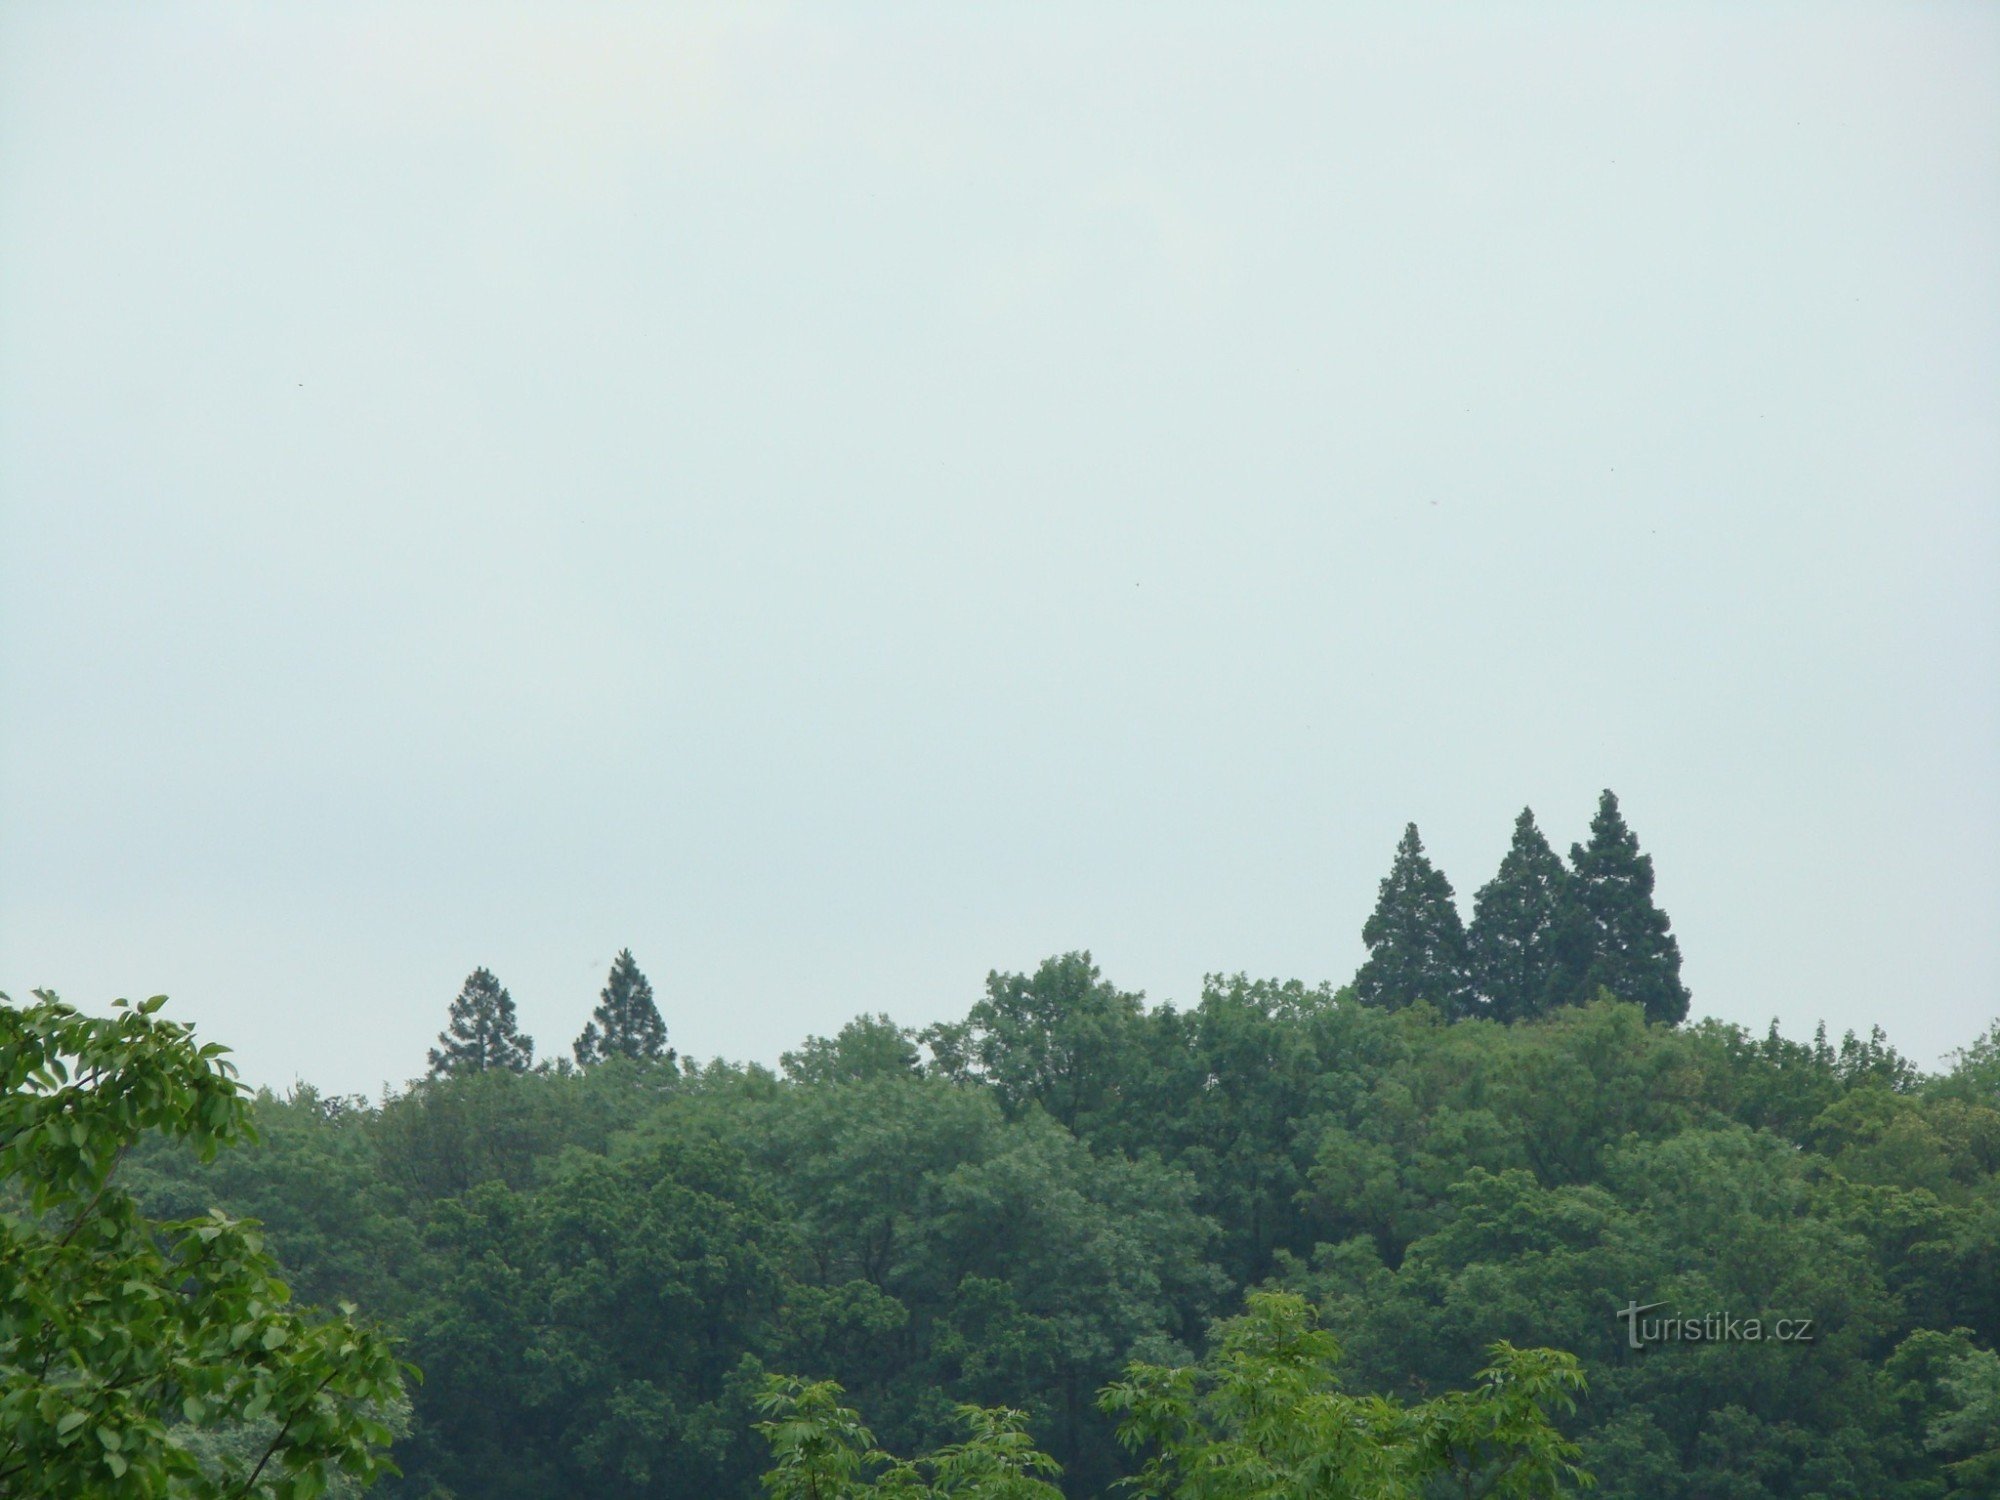 Γιγαντιαία δέντρα σεκόγια στο Ratměřice. Είναι πολύ ψηλότερα από τα άλλα δέντρα στο πάρκο του κάστρου.